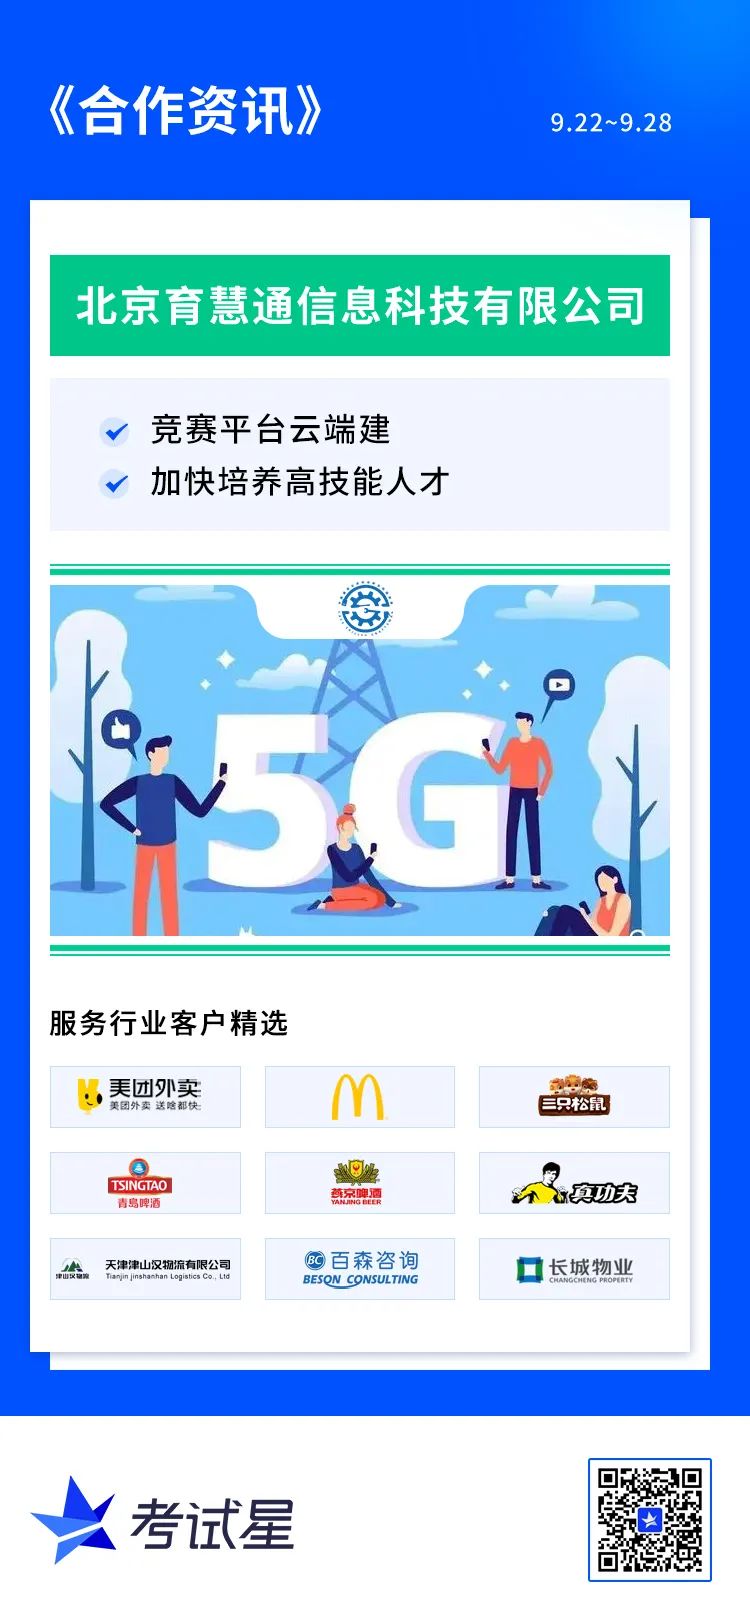 北京育慧通信息科技有限公司-竞赛平台